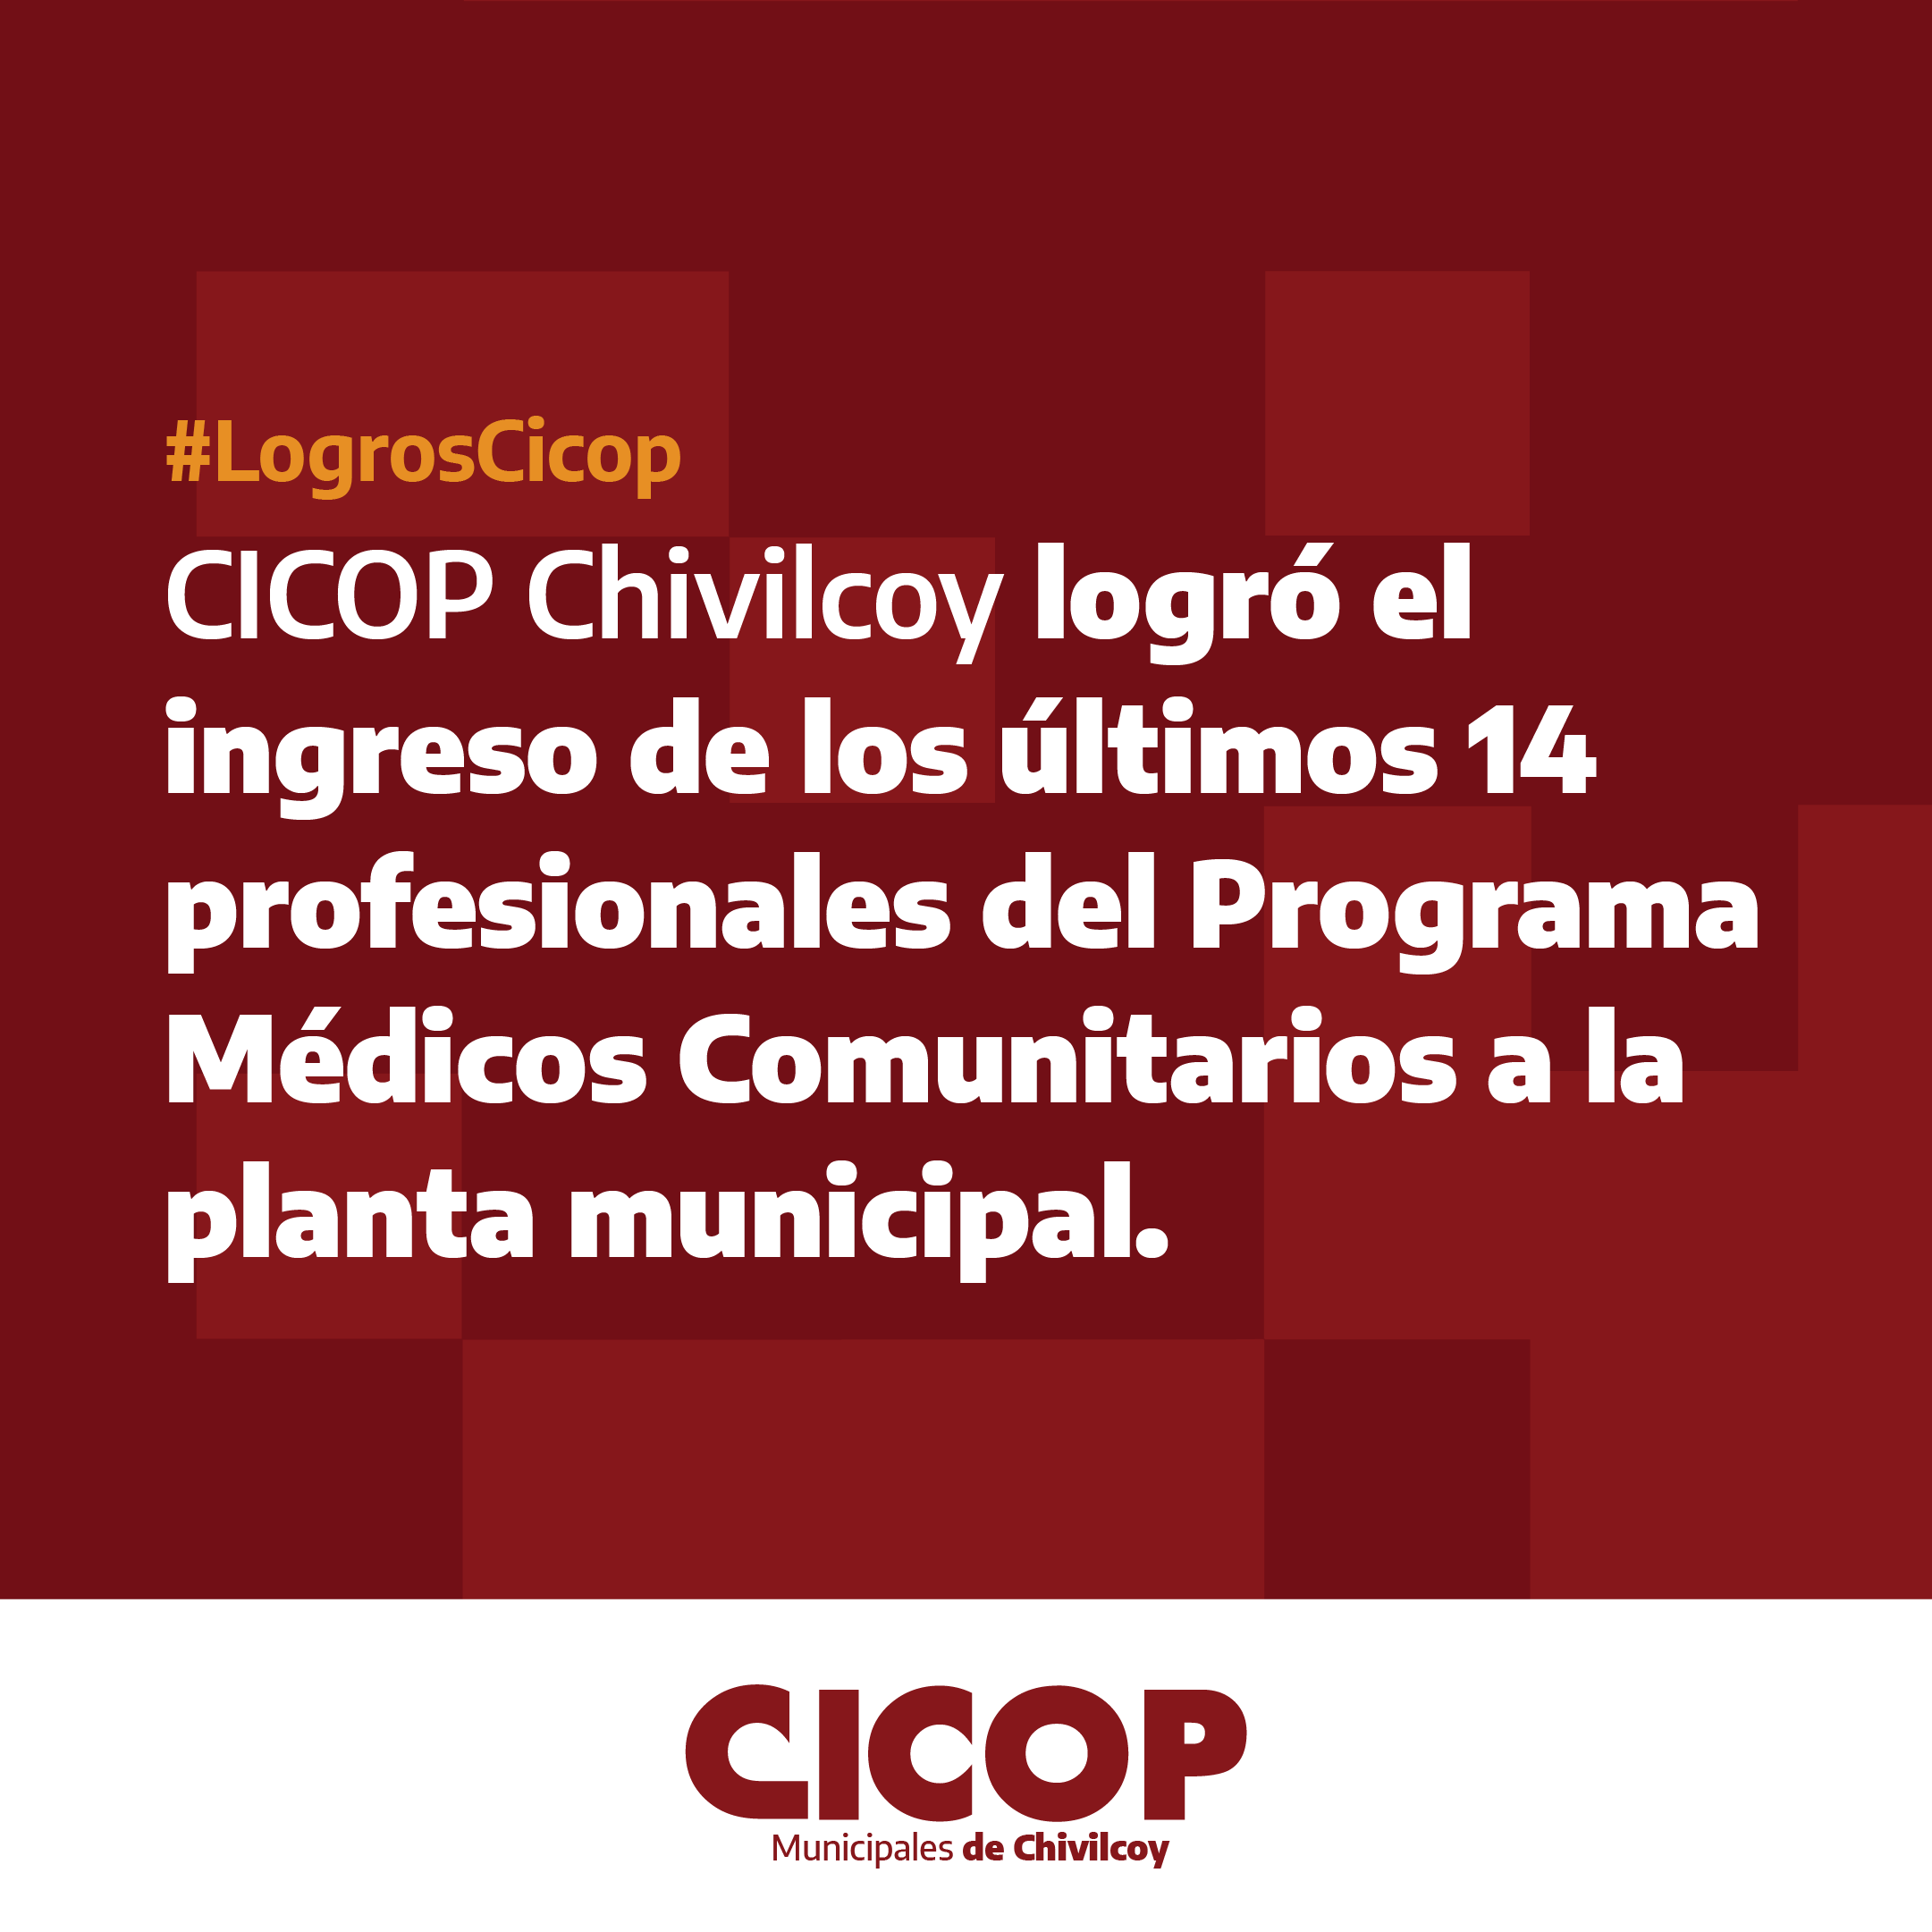 Chivilcoy: CICOP logró la incorporación de los últimos 14 profesionales del Programa Médicos Comunitarios a la planta municipal